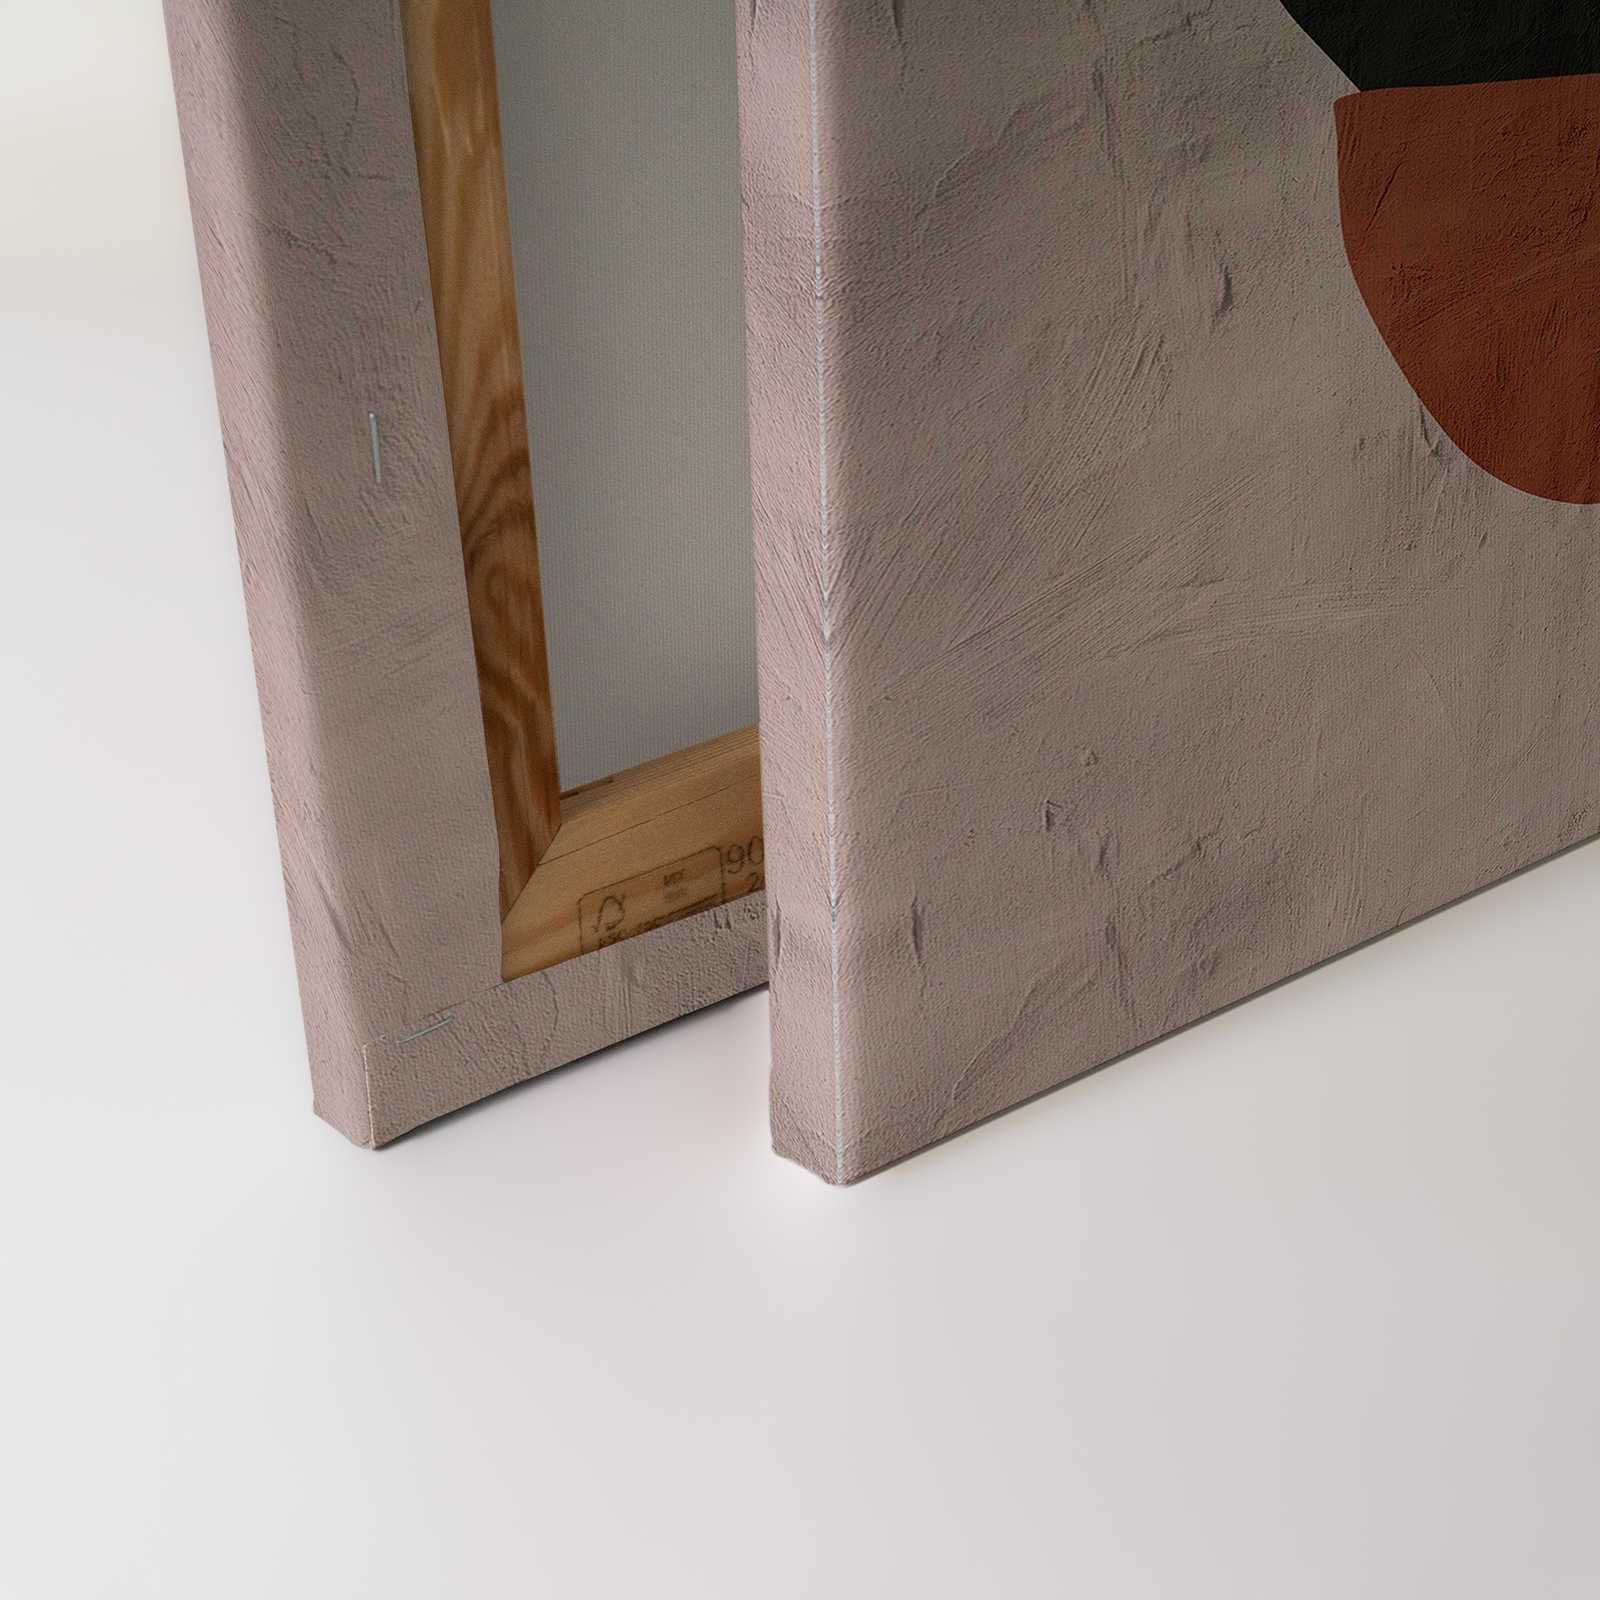             Santa Fe 1 - Tableau d'argile beige avec design ethnique - 0,90 m x 0,60 m
        